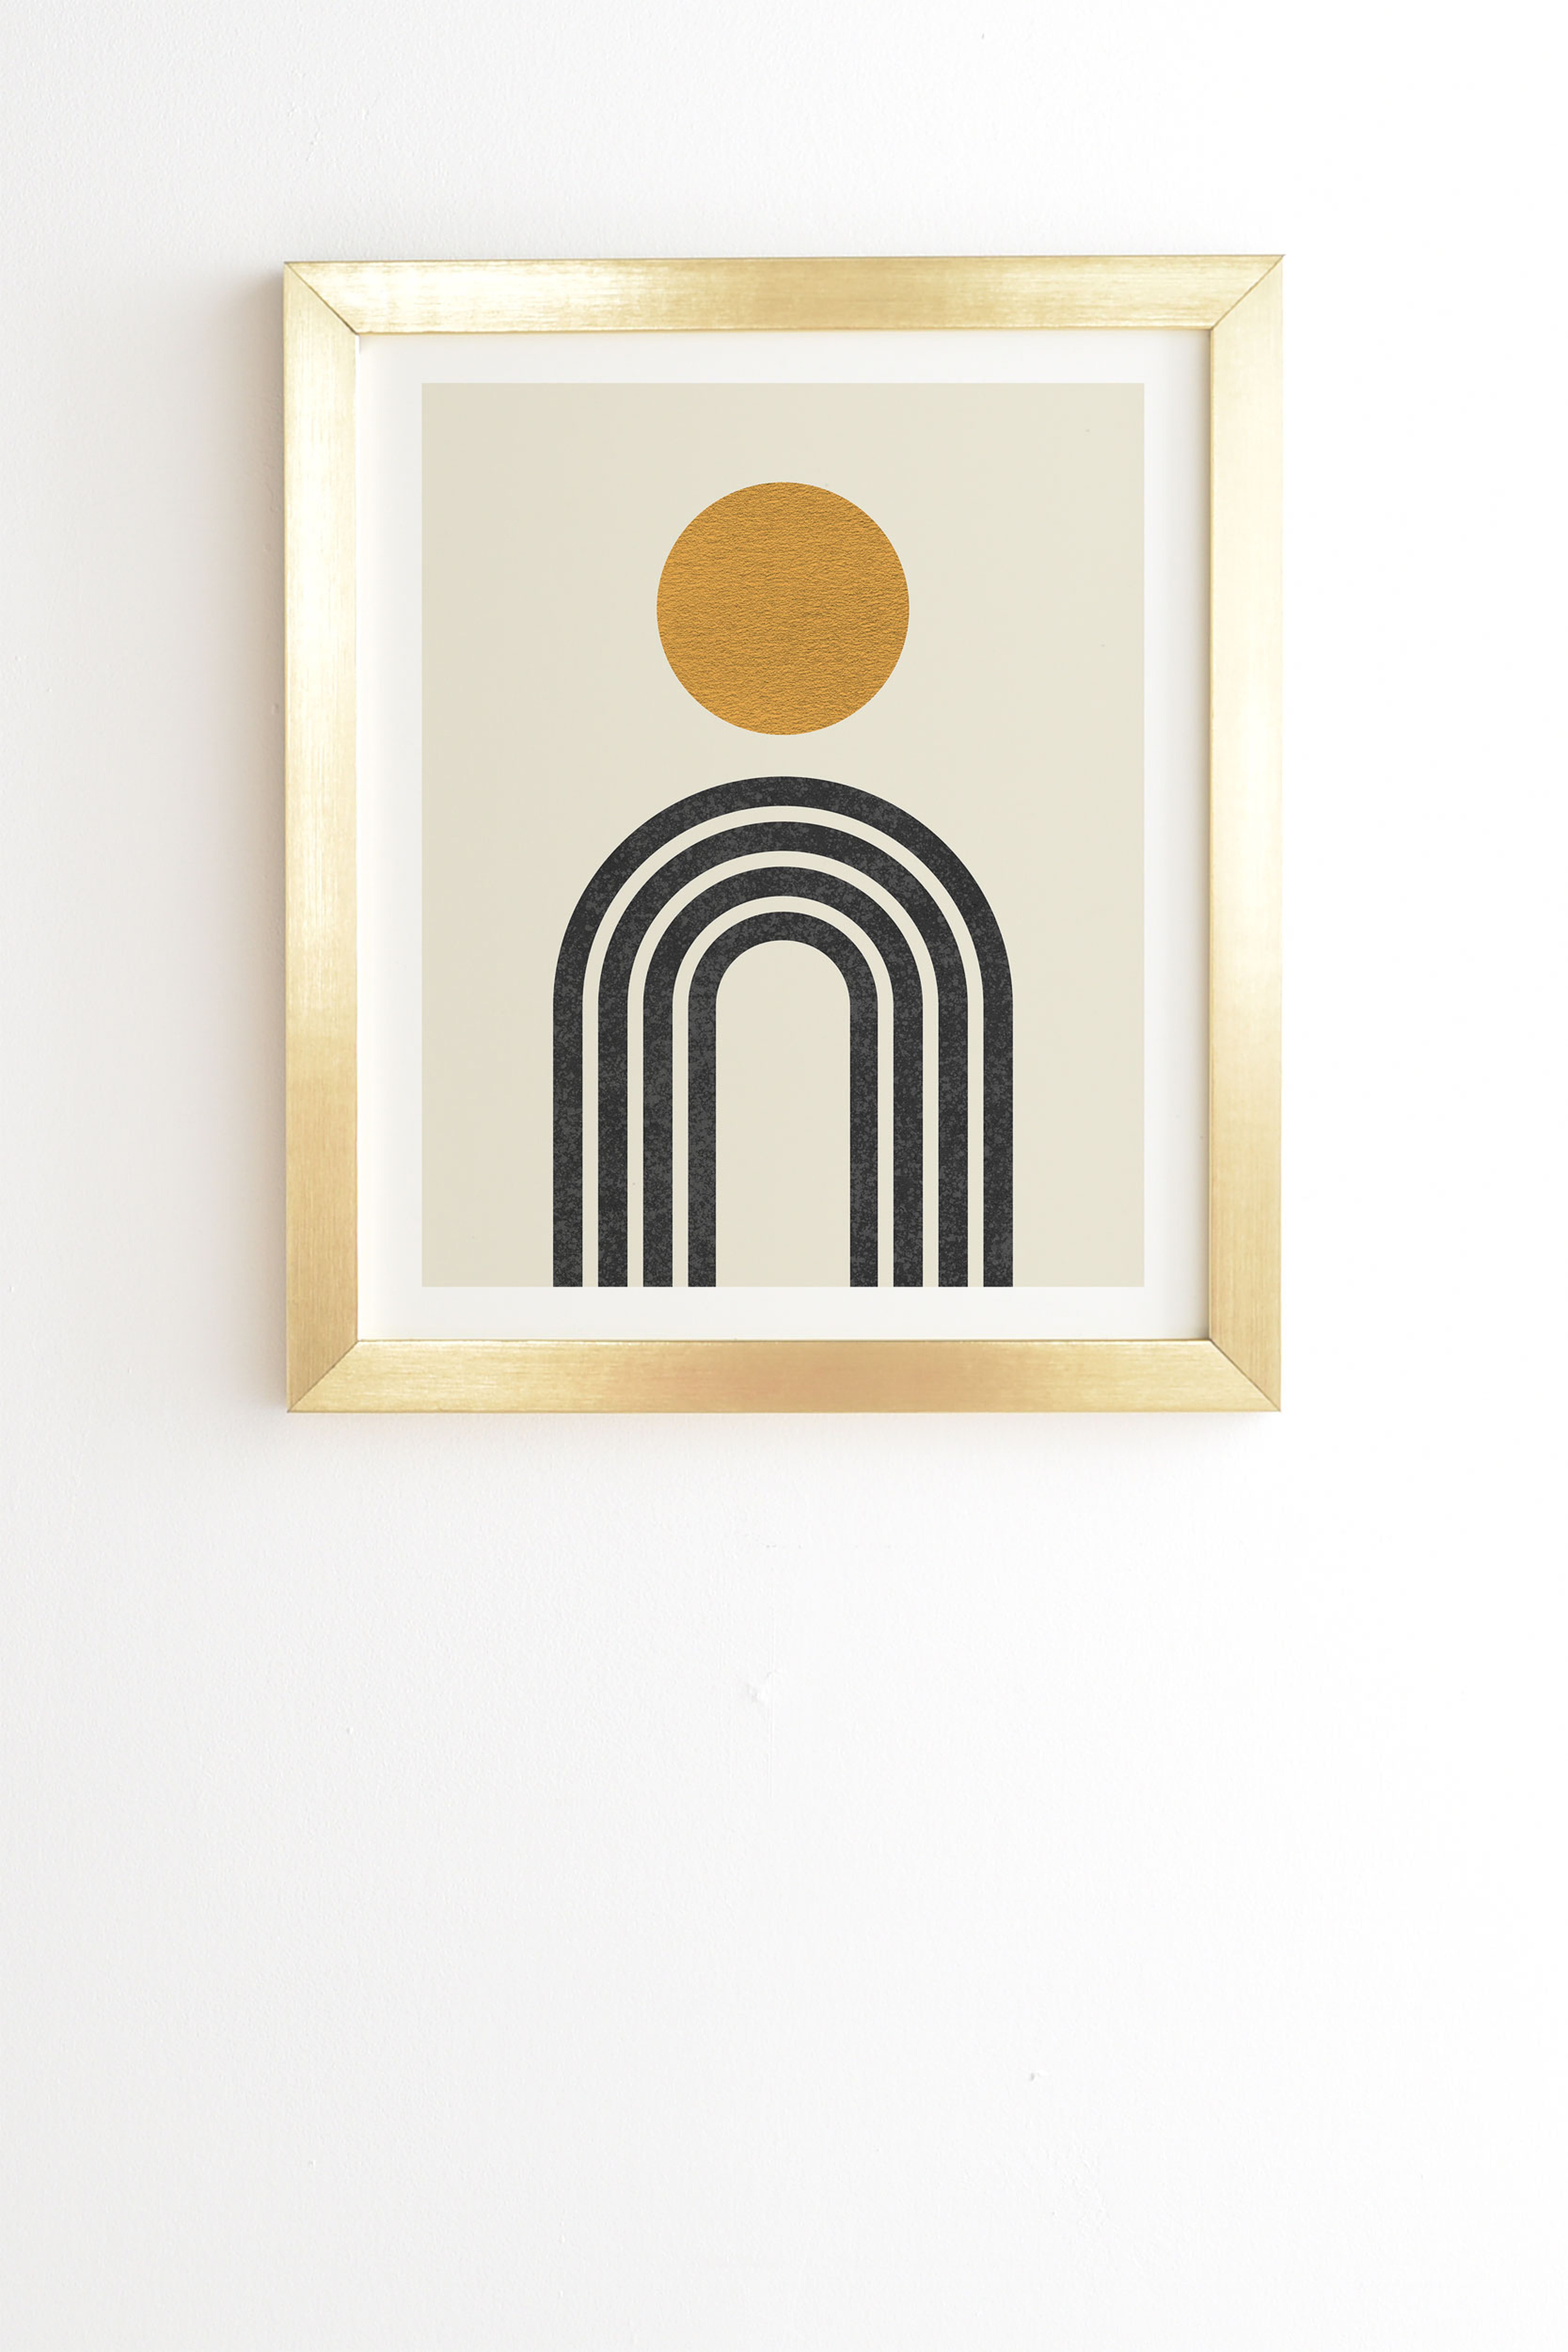 Mid Century Modern Gold Sun by MoonlightPrint - Framed Wall Art Basic Gold 11" x 13" - Wander Print Co.